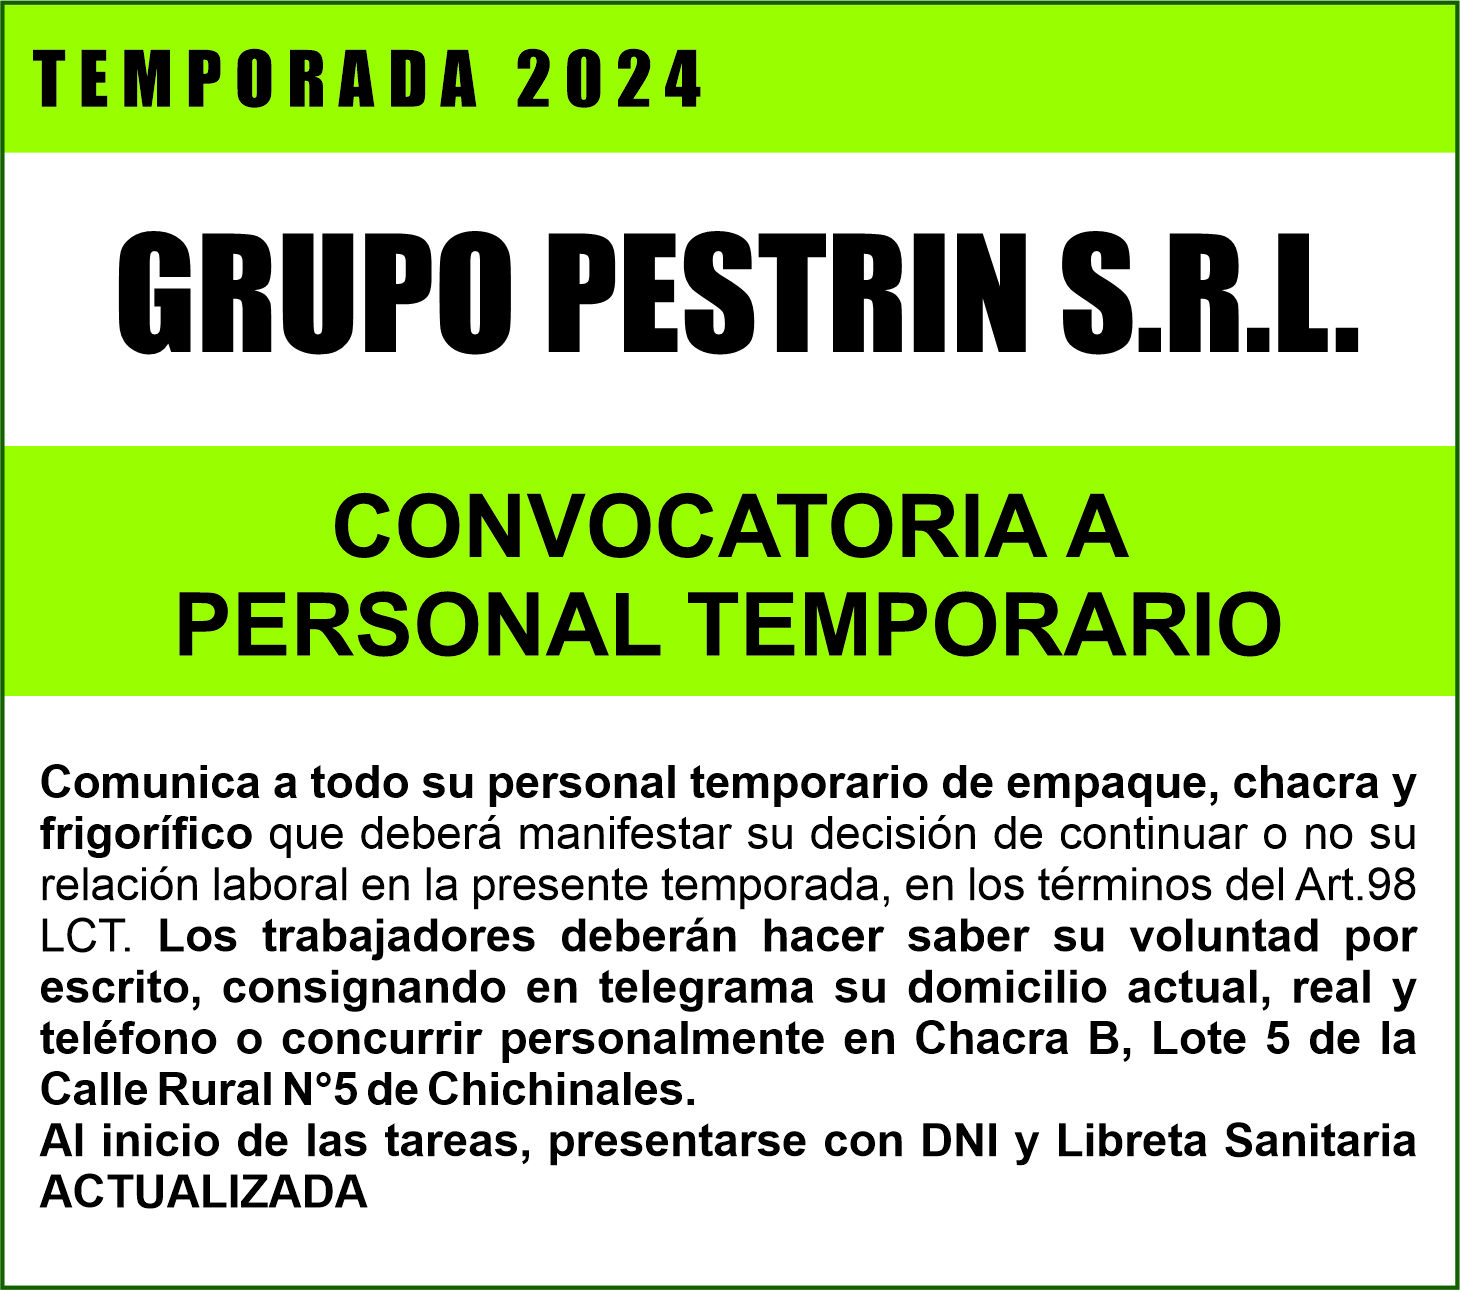 Convocatoria a personal temporario: Grupo Pestrín SRL